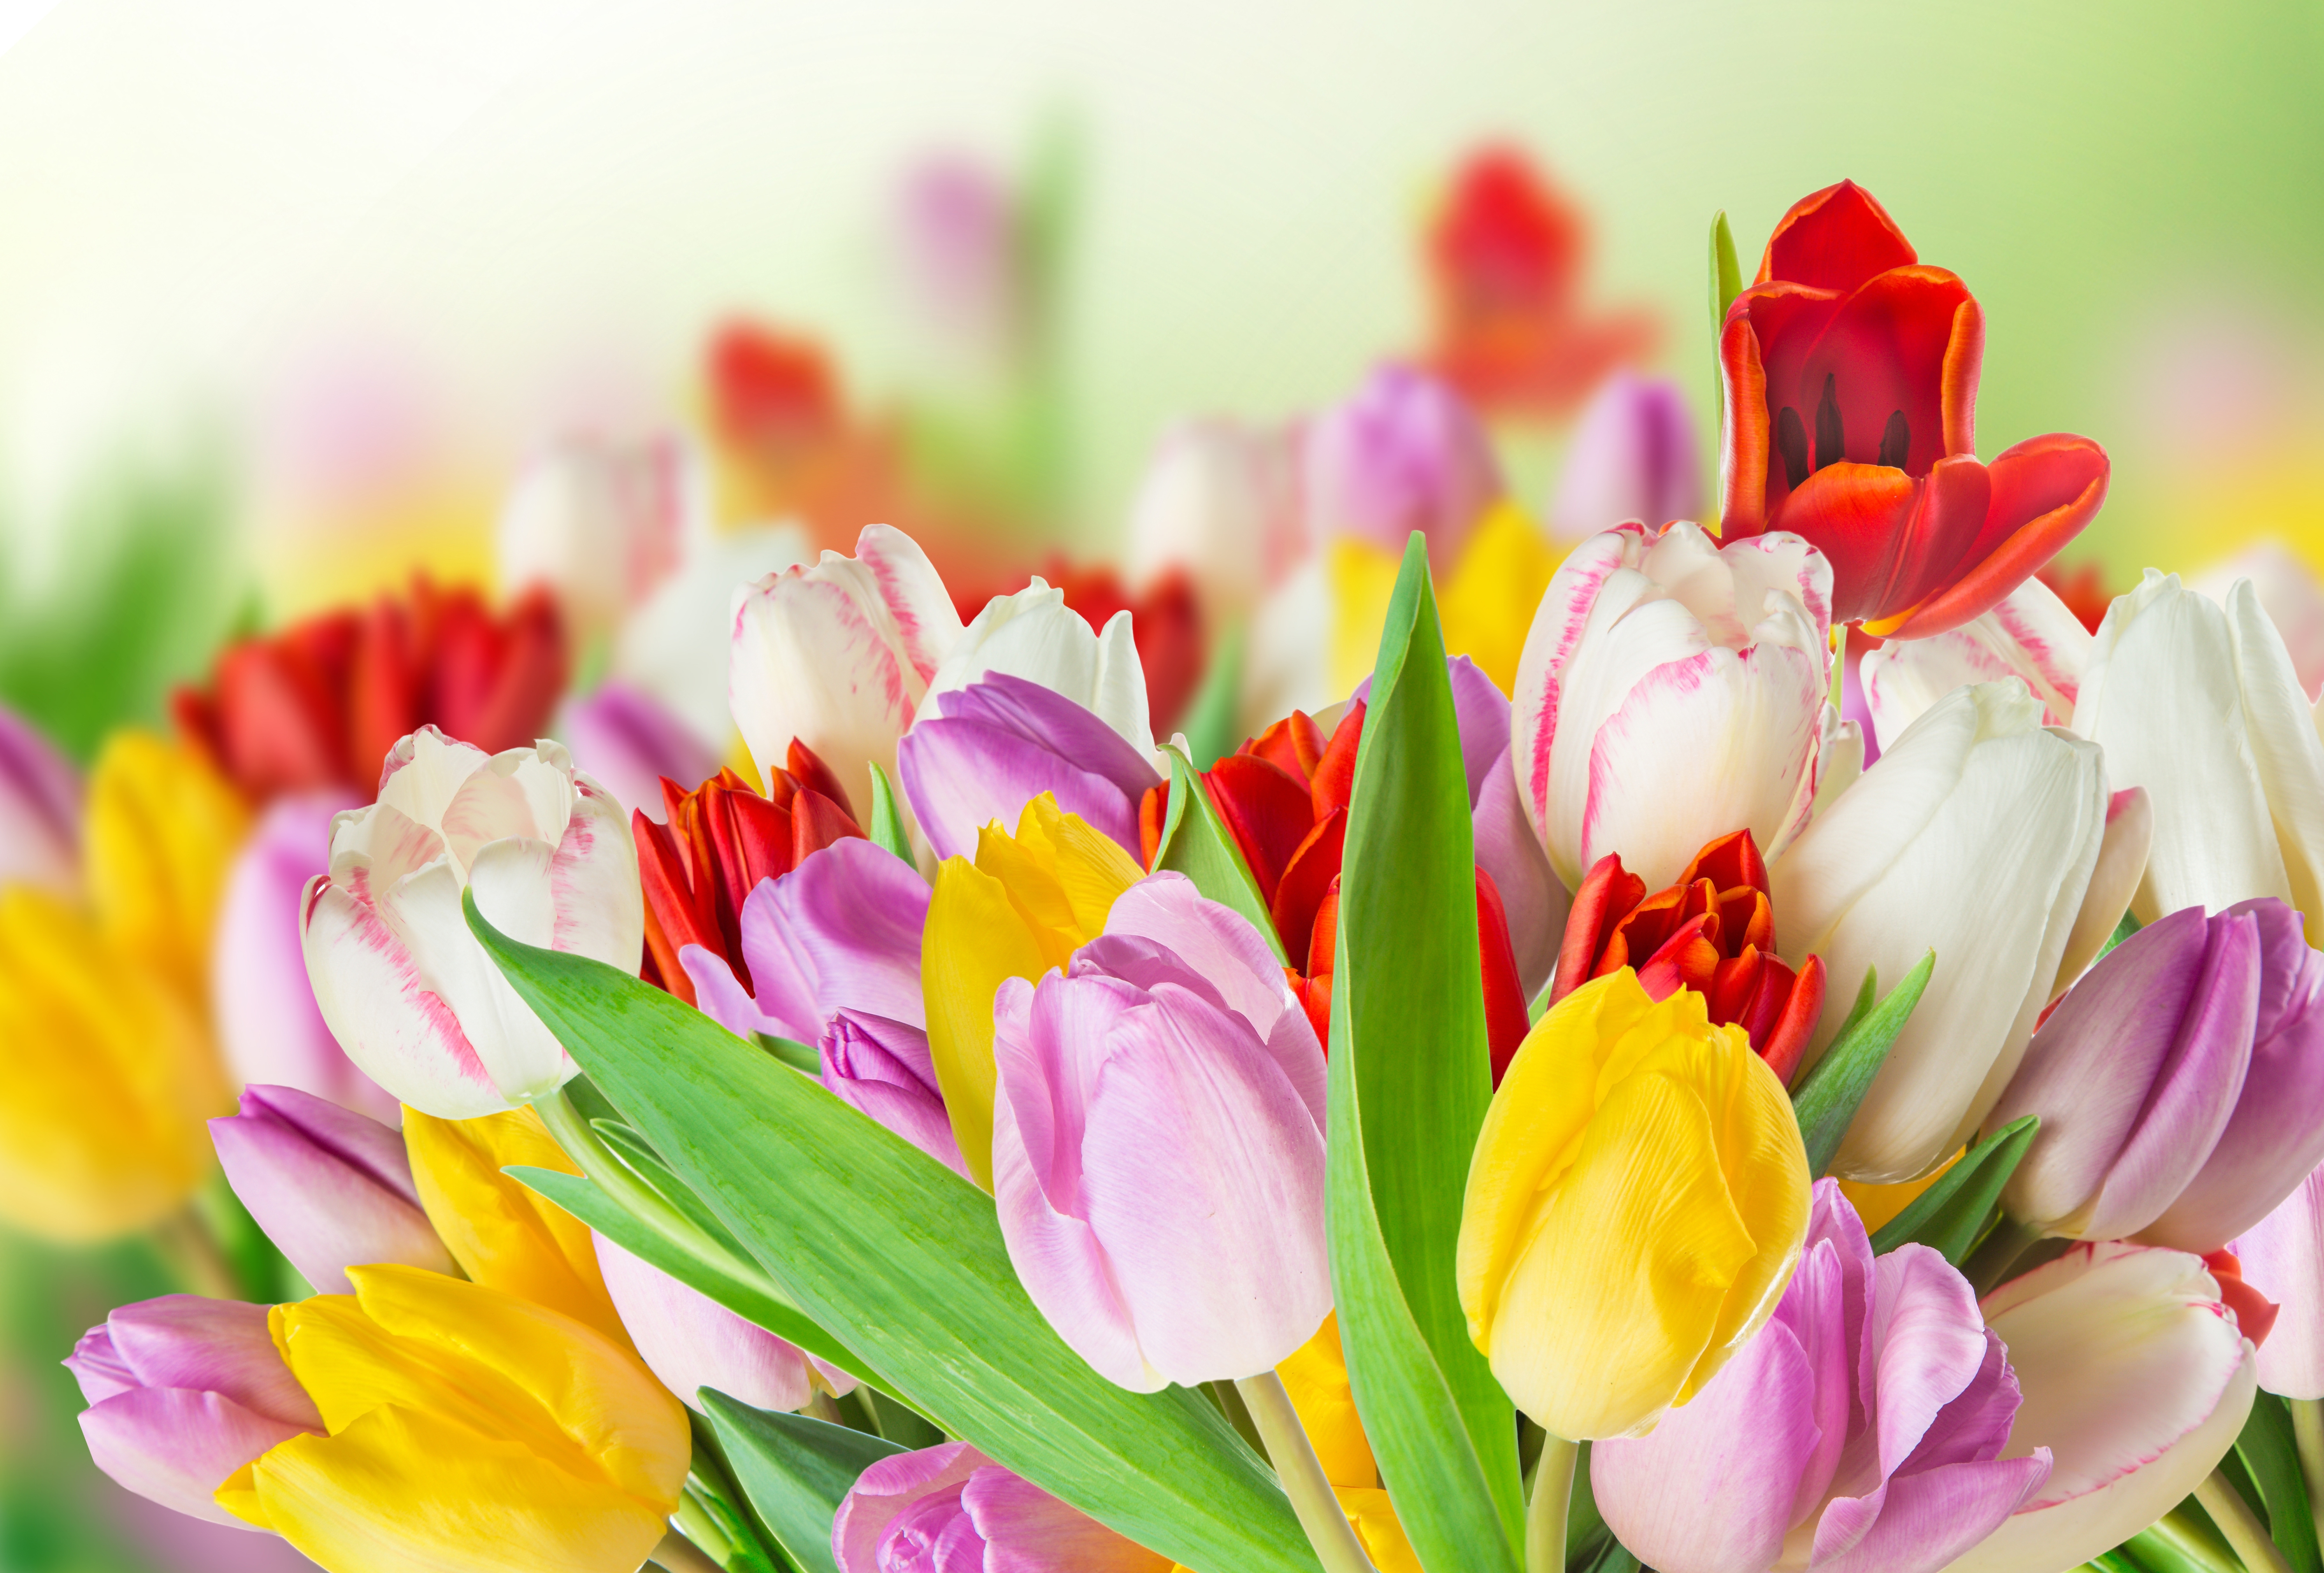 Descarga gratuita de fondo de pantalla para móvil de Naturaleza, Flores, Flor, Vistoso, Primavera, Tulipán, Flor Amarilla, Flor Blanca, Flor Purpura, Flor Roja, Tierra/naturaleza.